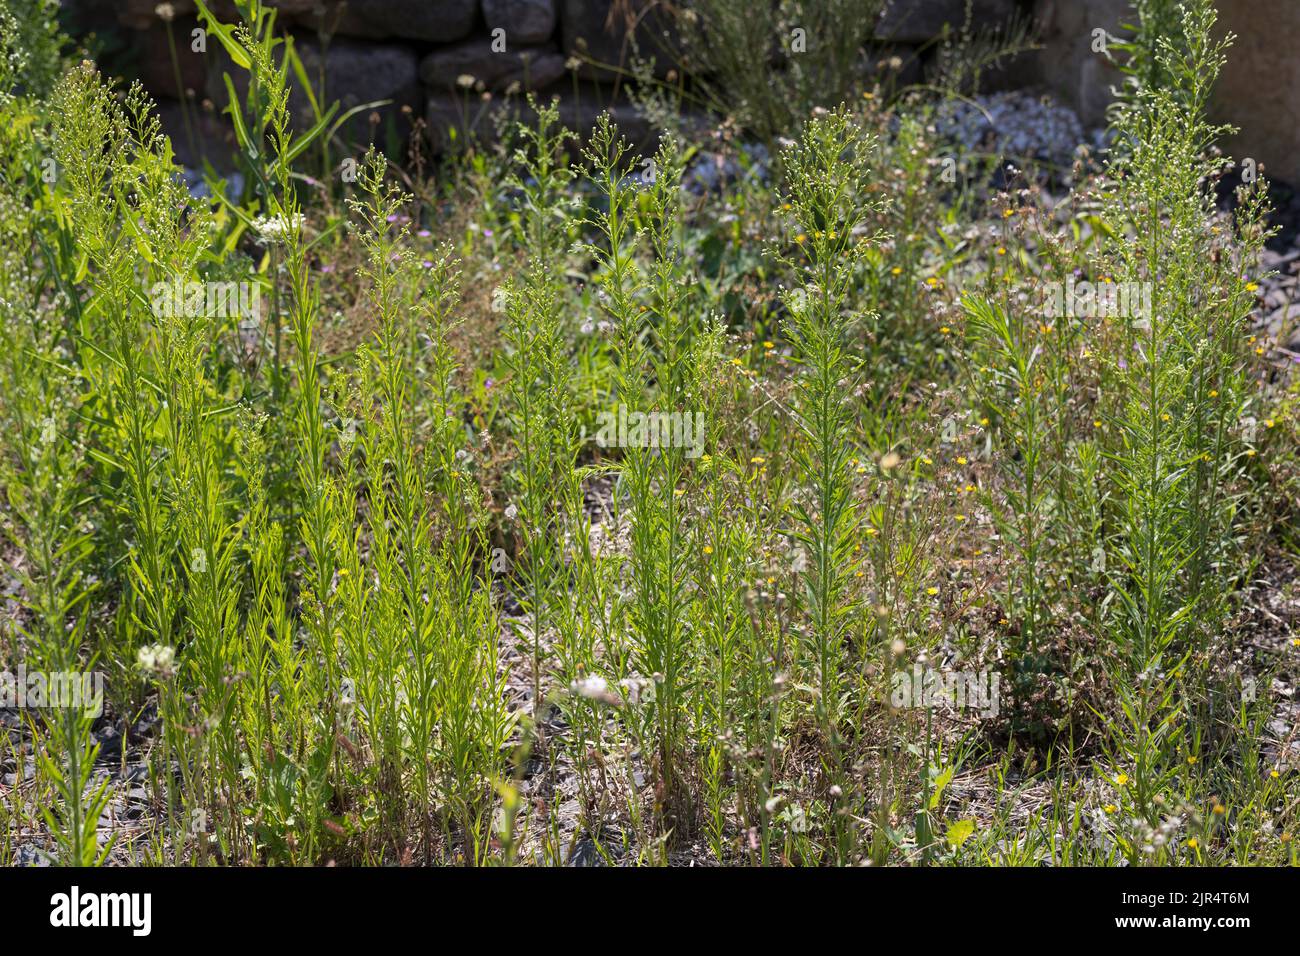 La hierba de caballo, fléabane canadiense (Conyza canadensis, Erigeron canadensis), crece en el campo de escombros, Alemania Foto de stock